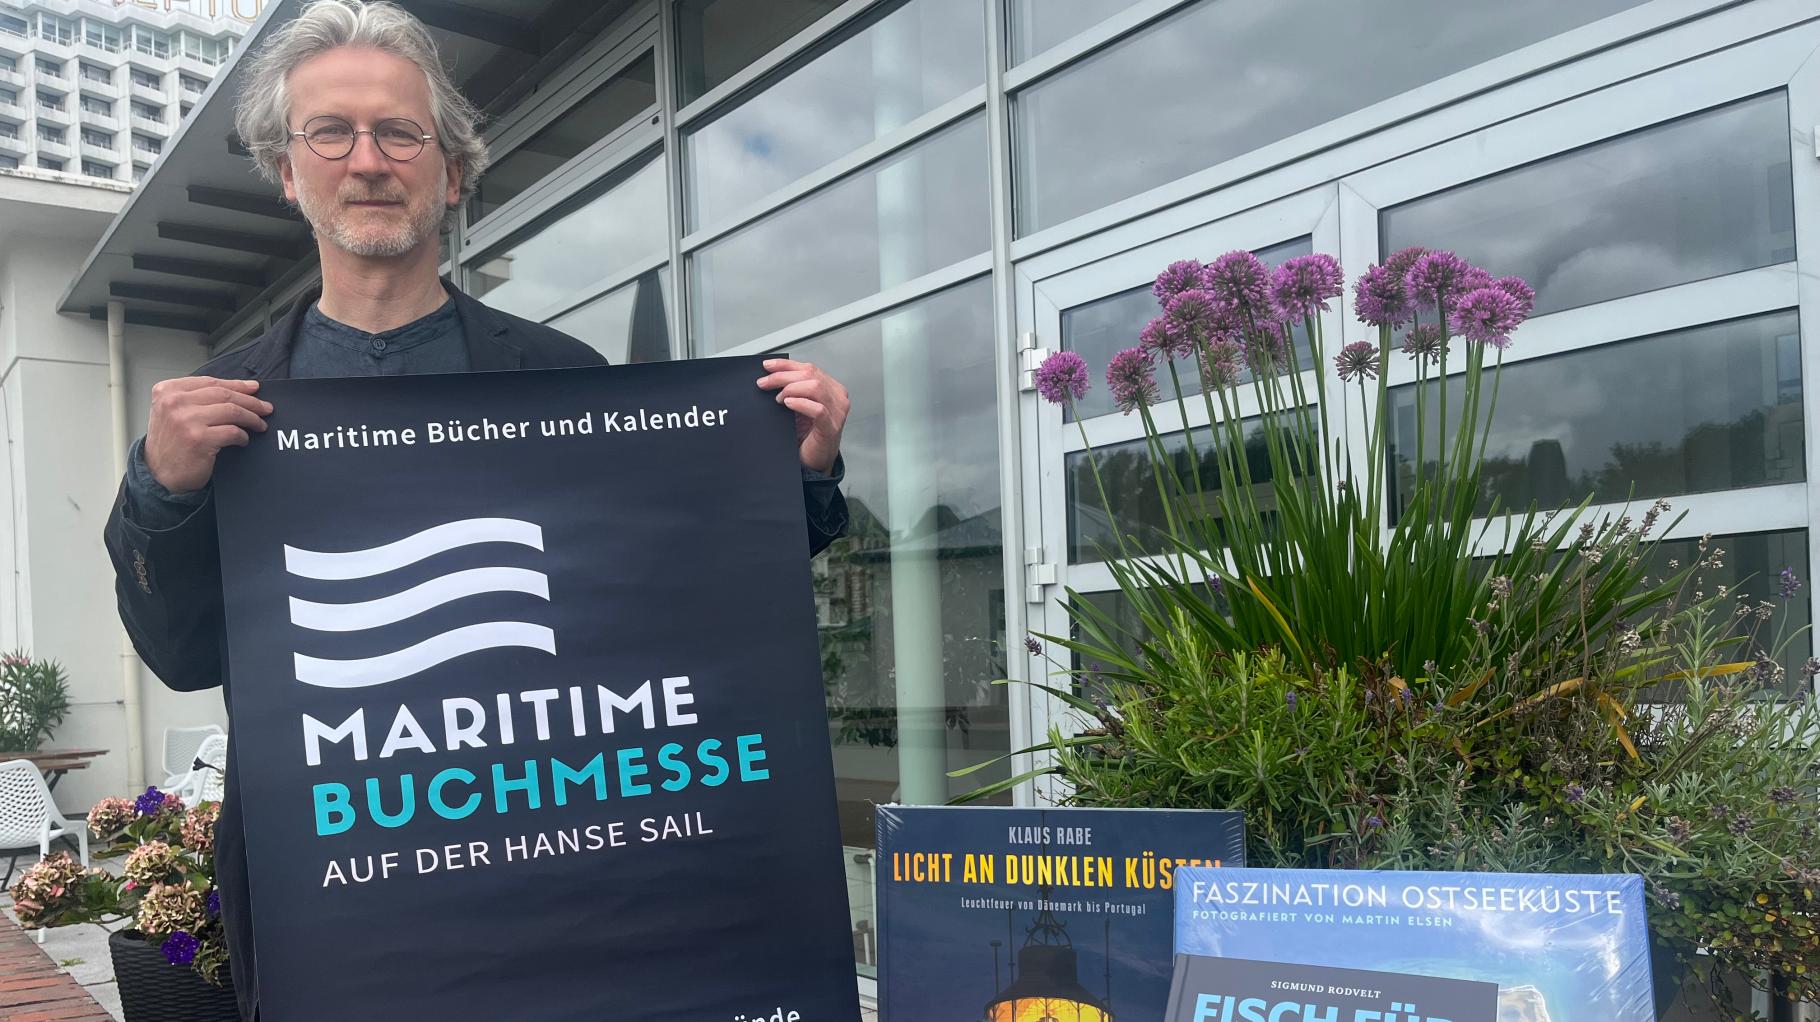 Erste maritime Buchmesse startet zur Hanse Sail im Kurhaus 